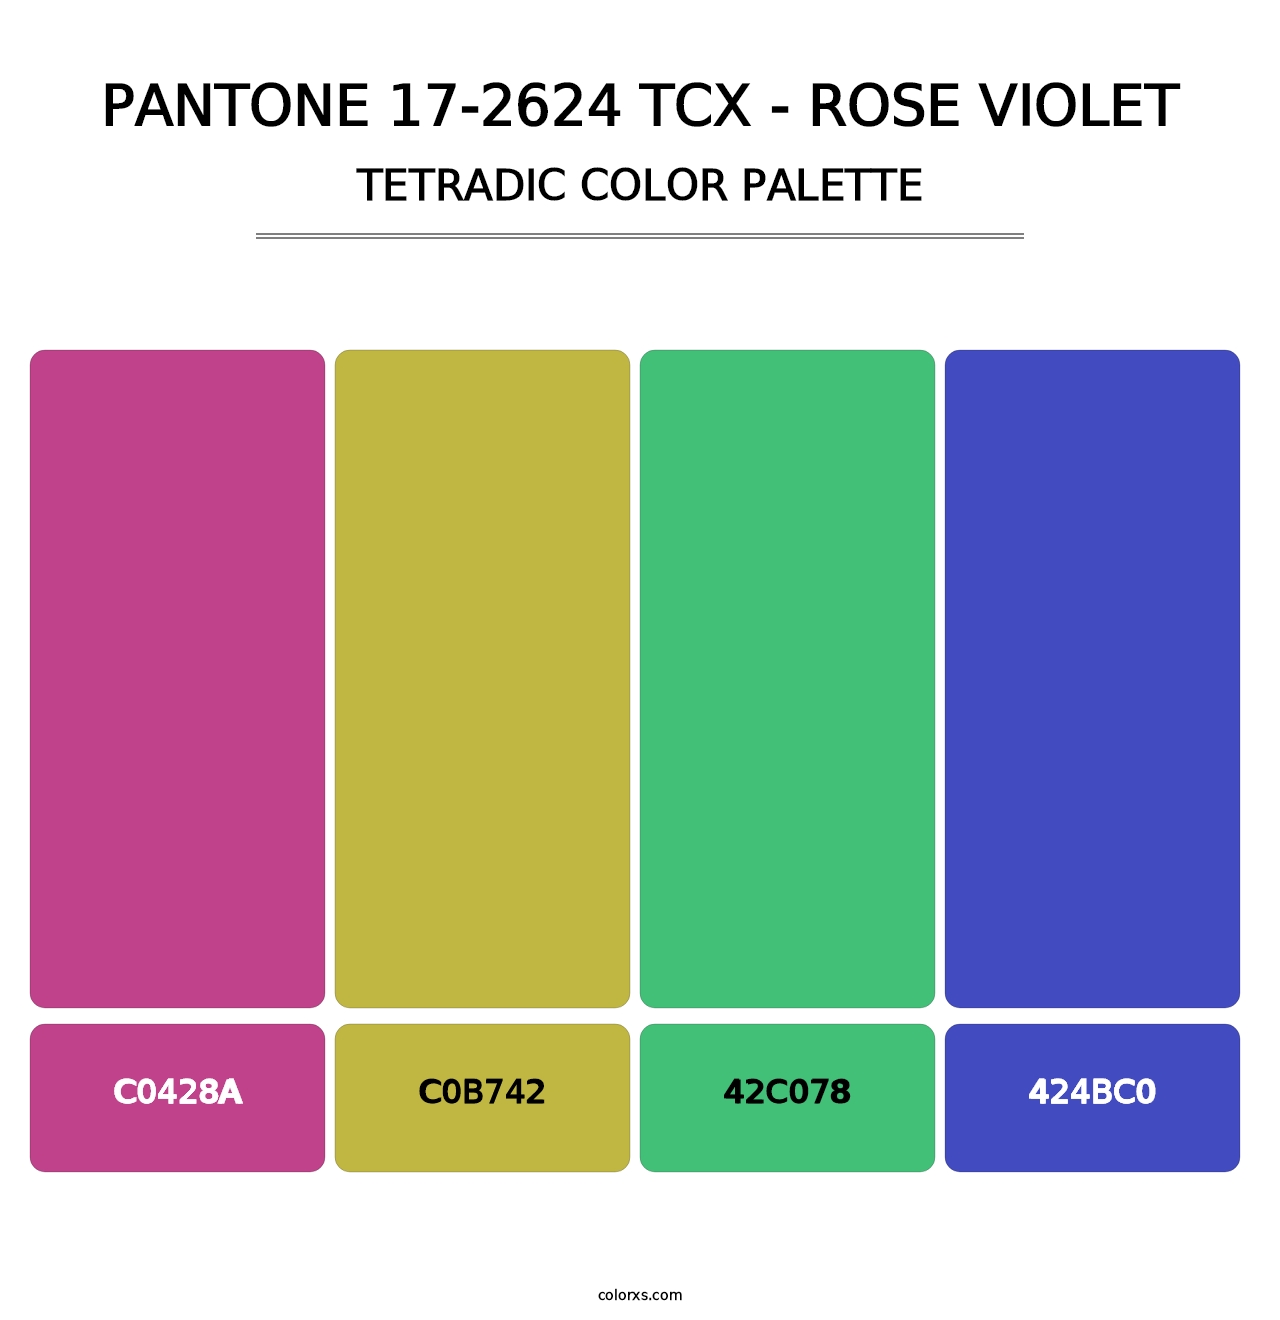 PANTONE 17-2624 TCX - Rose Violet - Tetradic Color Palette